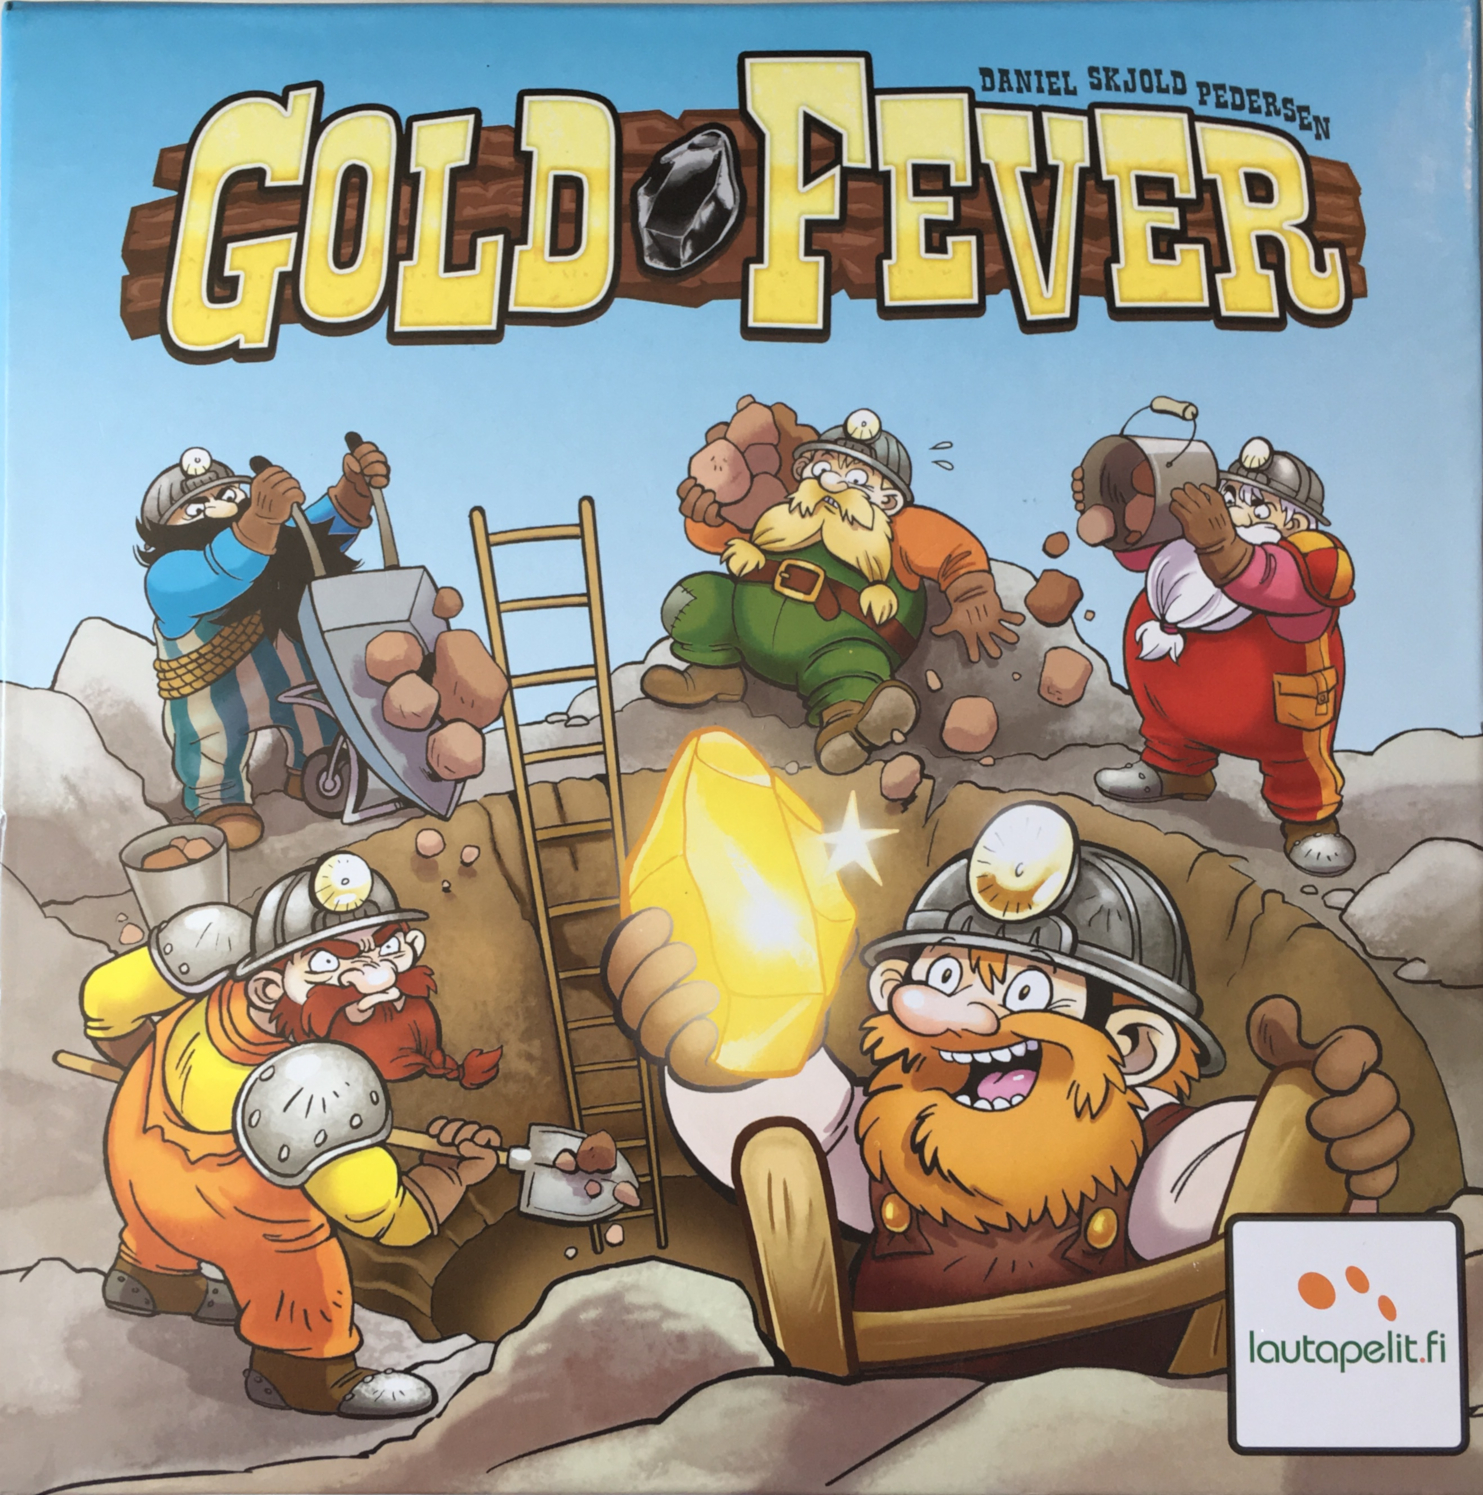 Gold fever